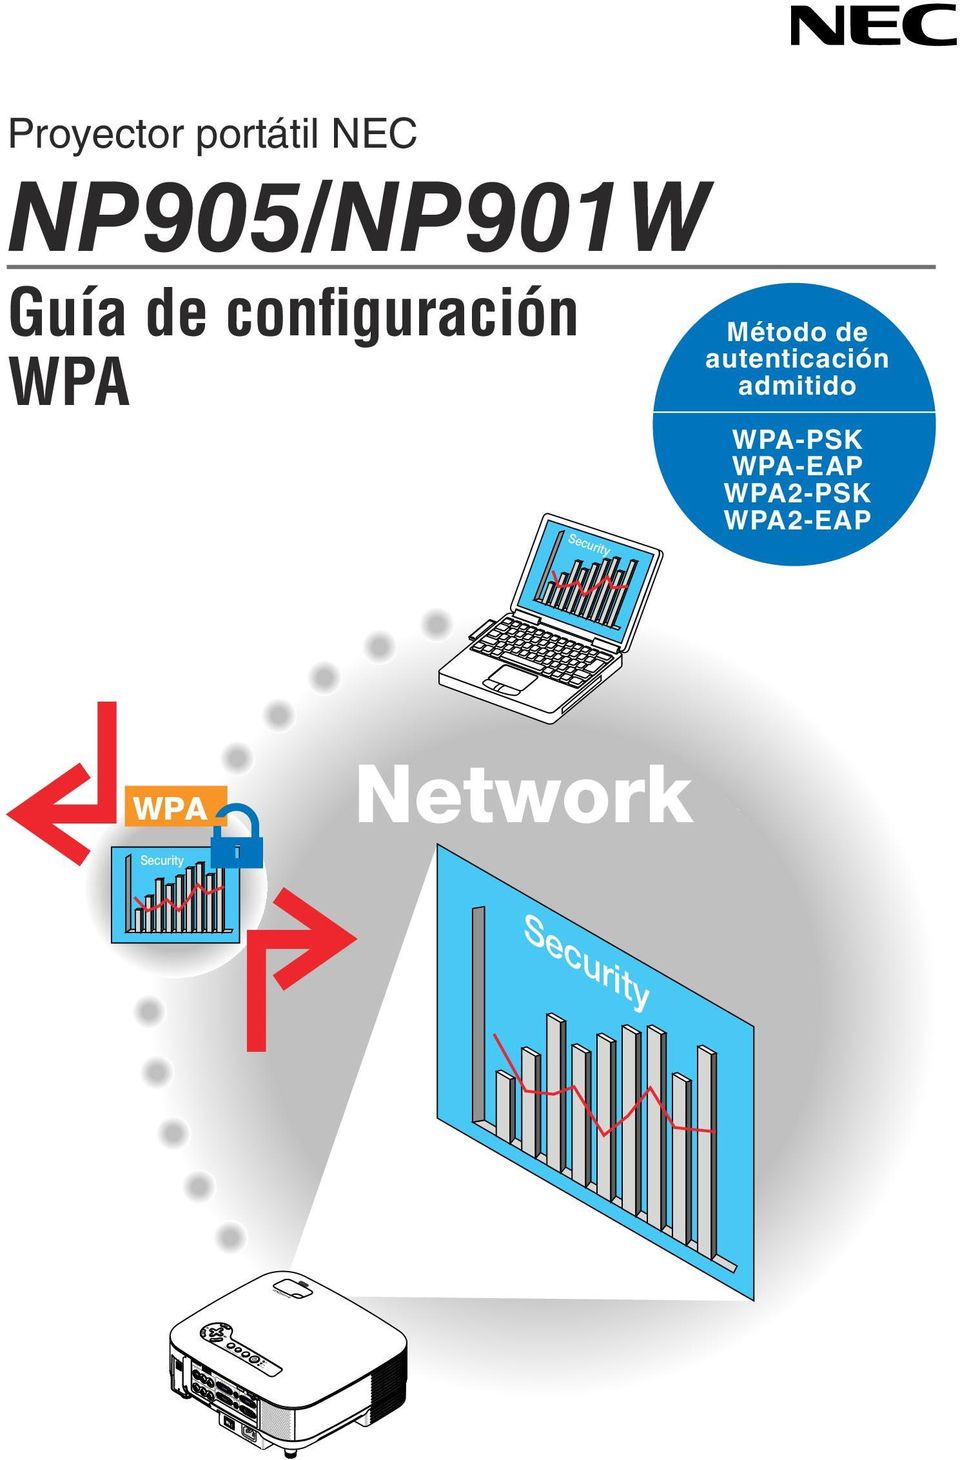 NP905/NP901W Guía de configuración WPA Security Método de autenticación admitido WPA-PSK WPA-EAP WPA2-PSK